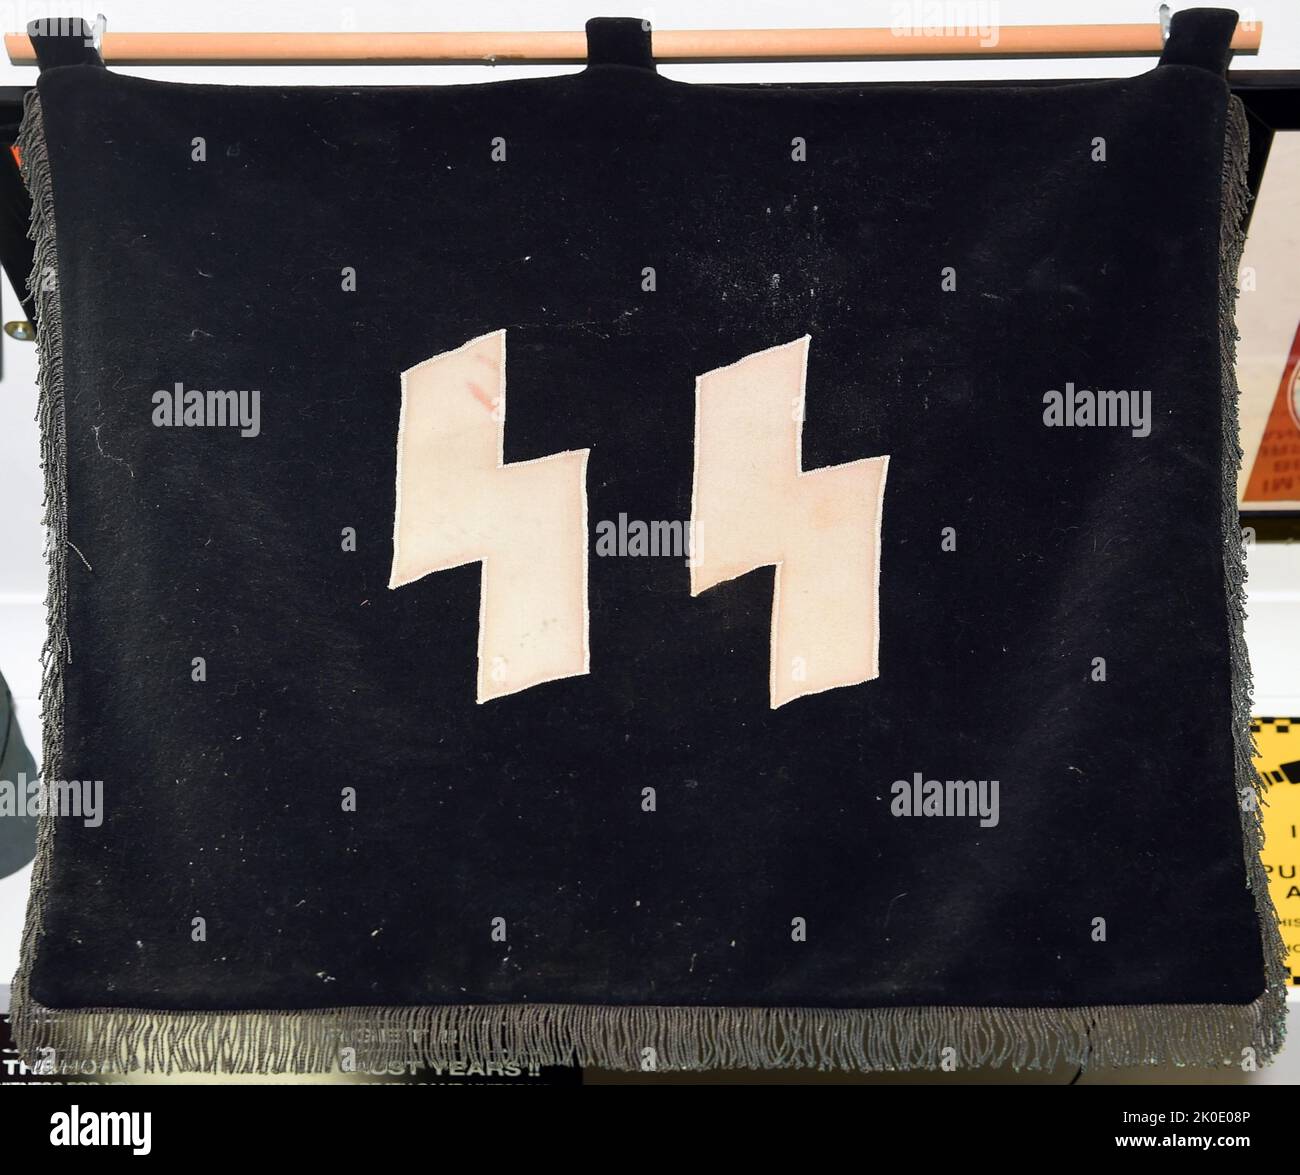 Flagge der Schutzstaffel (SS), einer großen paramilitärischen Organisation unter Adolf Hitler und der Nazi-Partei (NSDAP) in Nazi-Deutschland und später im gesamten von Deutschland besetzten Europa während des Zweiten Weltkriegs Stockfoto